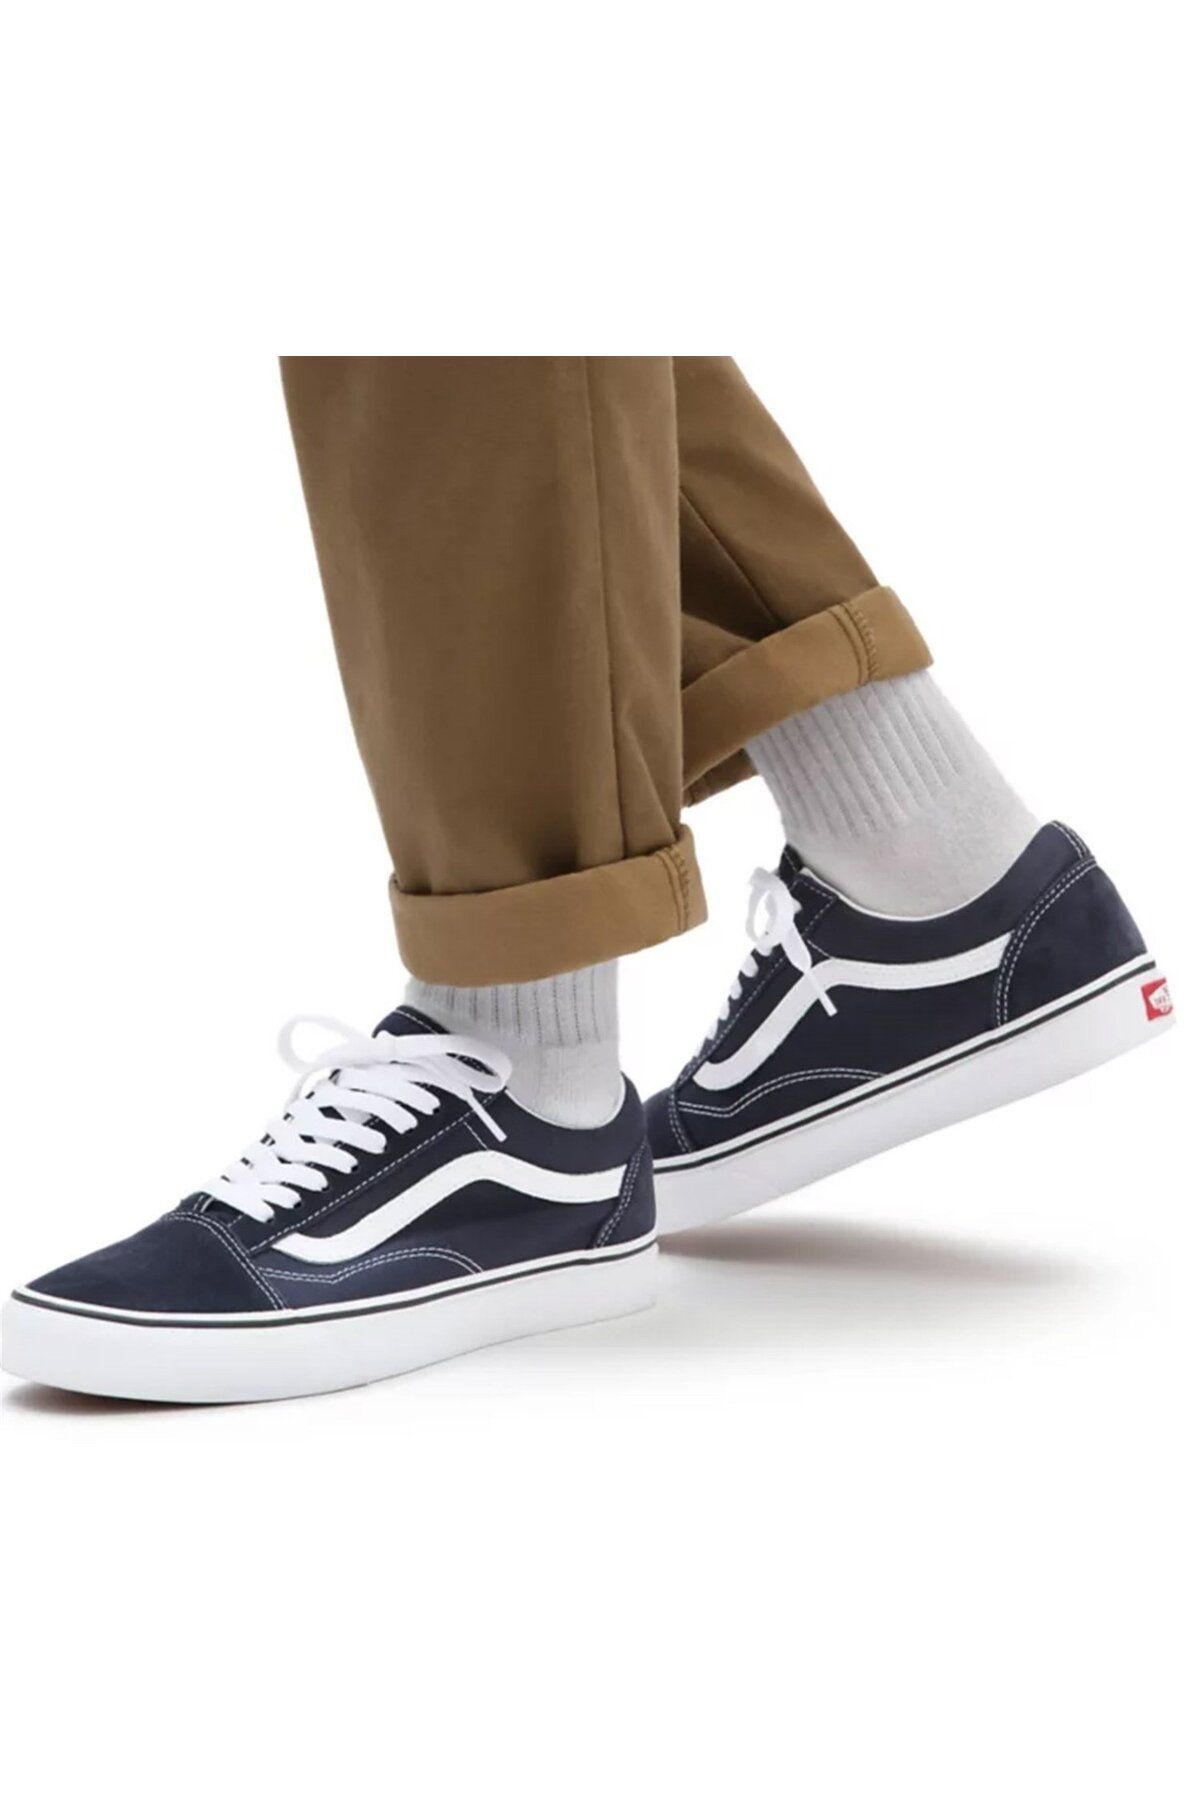 Vans Old Skool Günlük Ayakkabı Sneaker Lacivert